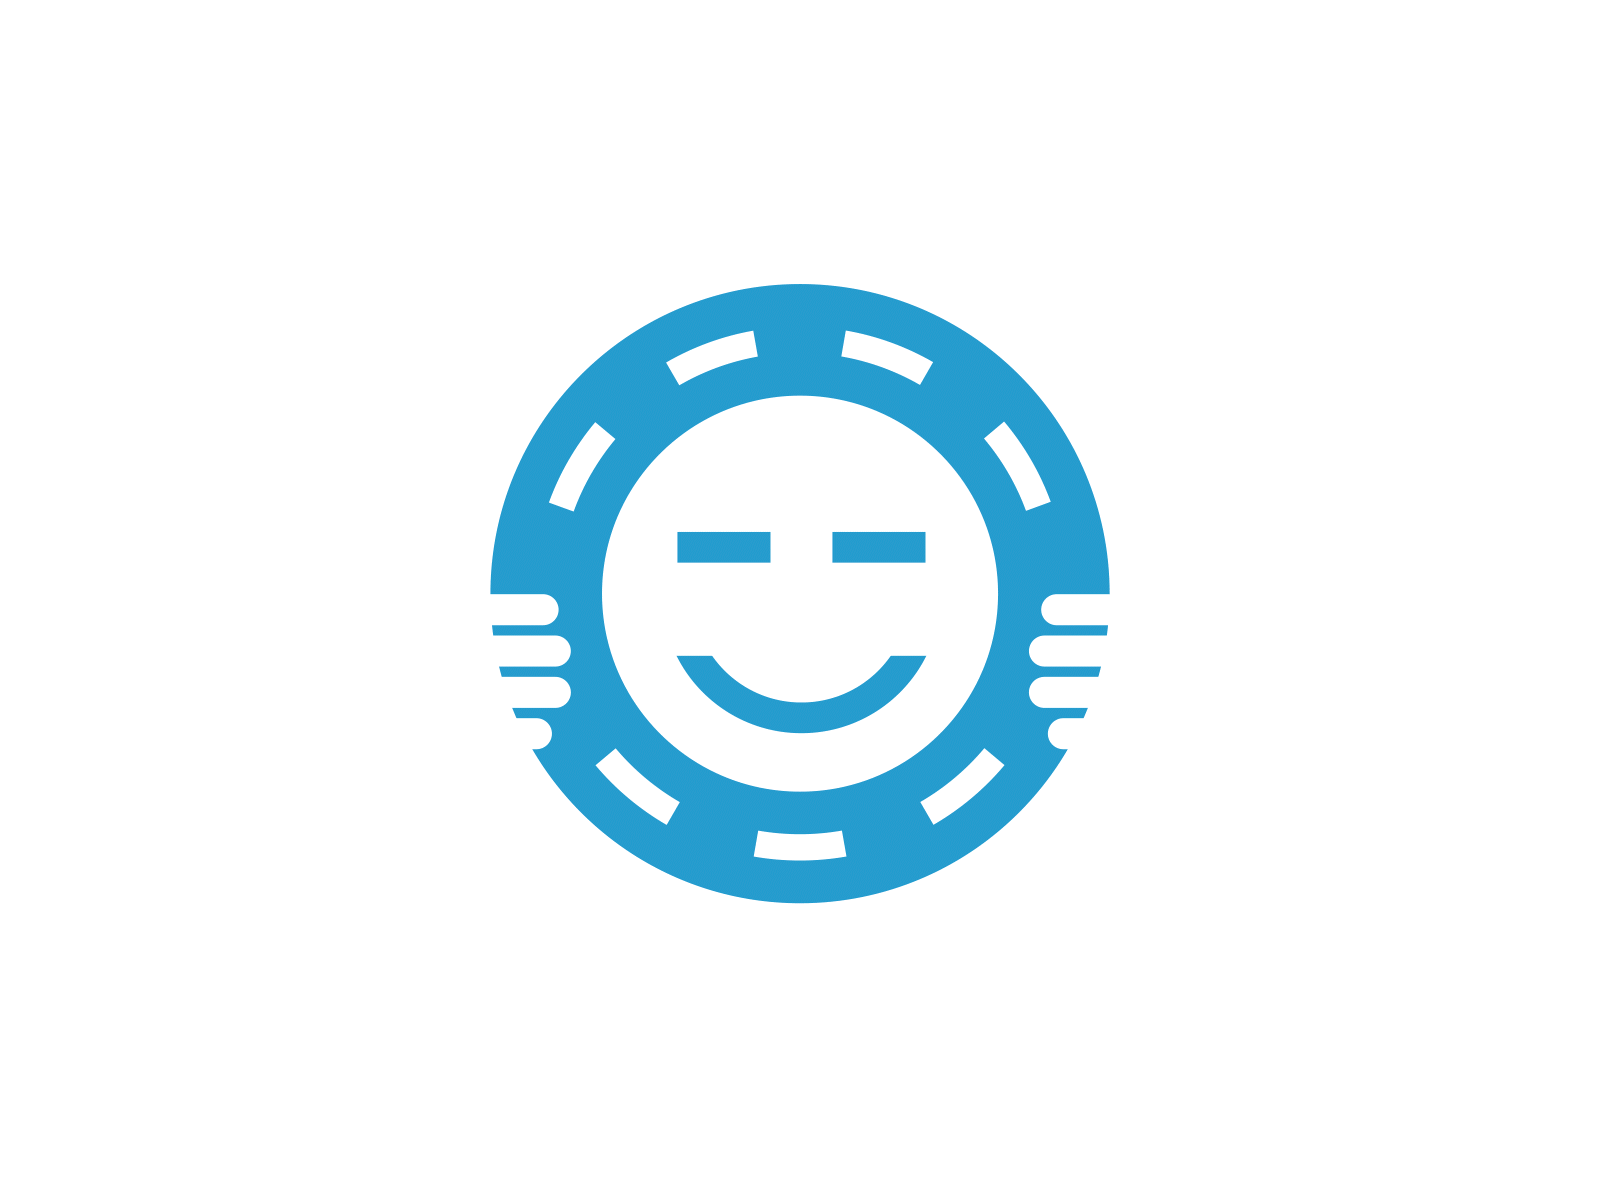 «Tobolsk. On the roads of good» design good logo road smile social logo steering wheel tobolsk